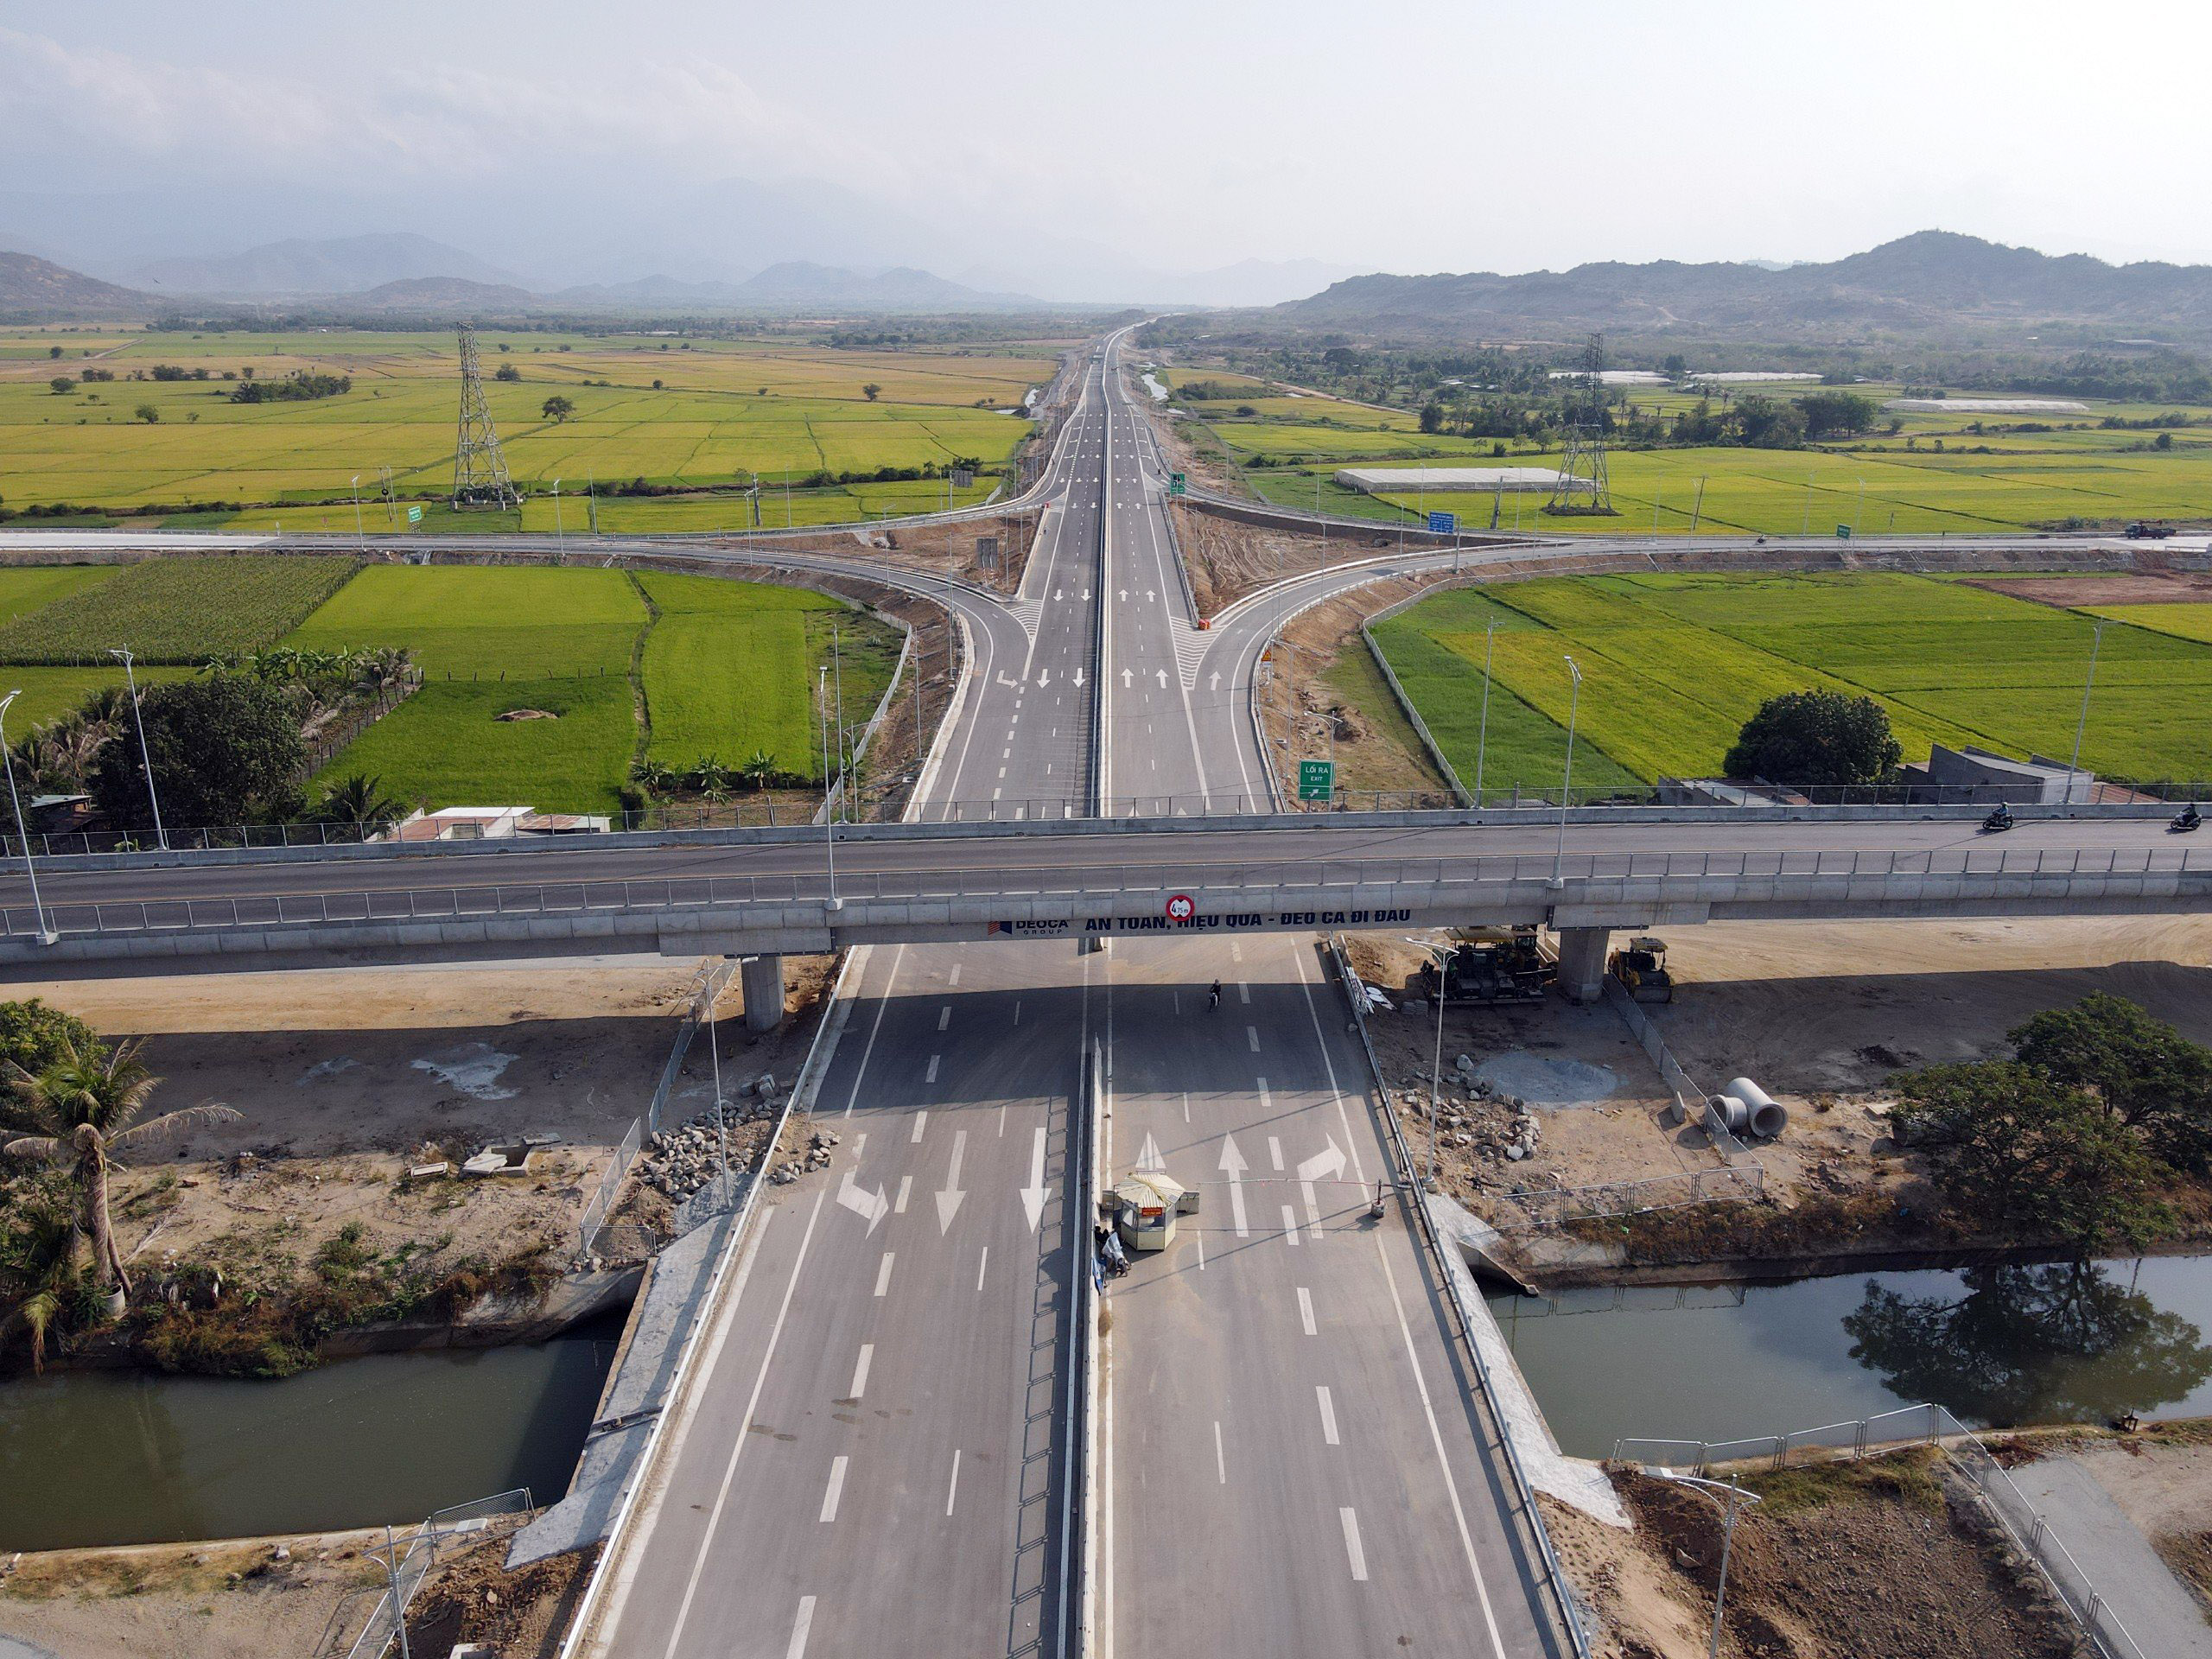 Cao tốc Cam Lâm - Vĩnh Hảo do liên doanh Tập đoàn Đèo Cả và Công ty 194 làm chủ đầu tư với tổng vốn 8.925 tỷ đồng theo hình thức hợp đồng đối tác công tư (PPP). Dự án đi qua 3 tỉnh, gồm: Khánh Hoà (5km), Ninh Thuận (63km) và Bình Thuận (12km).